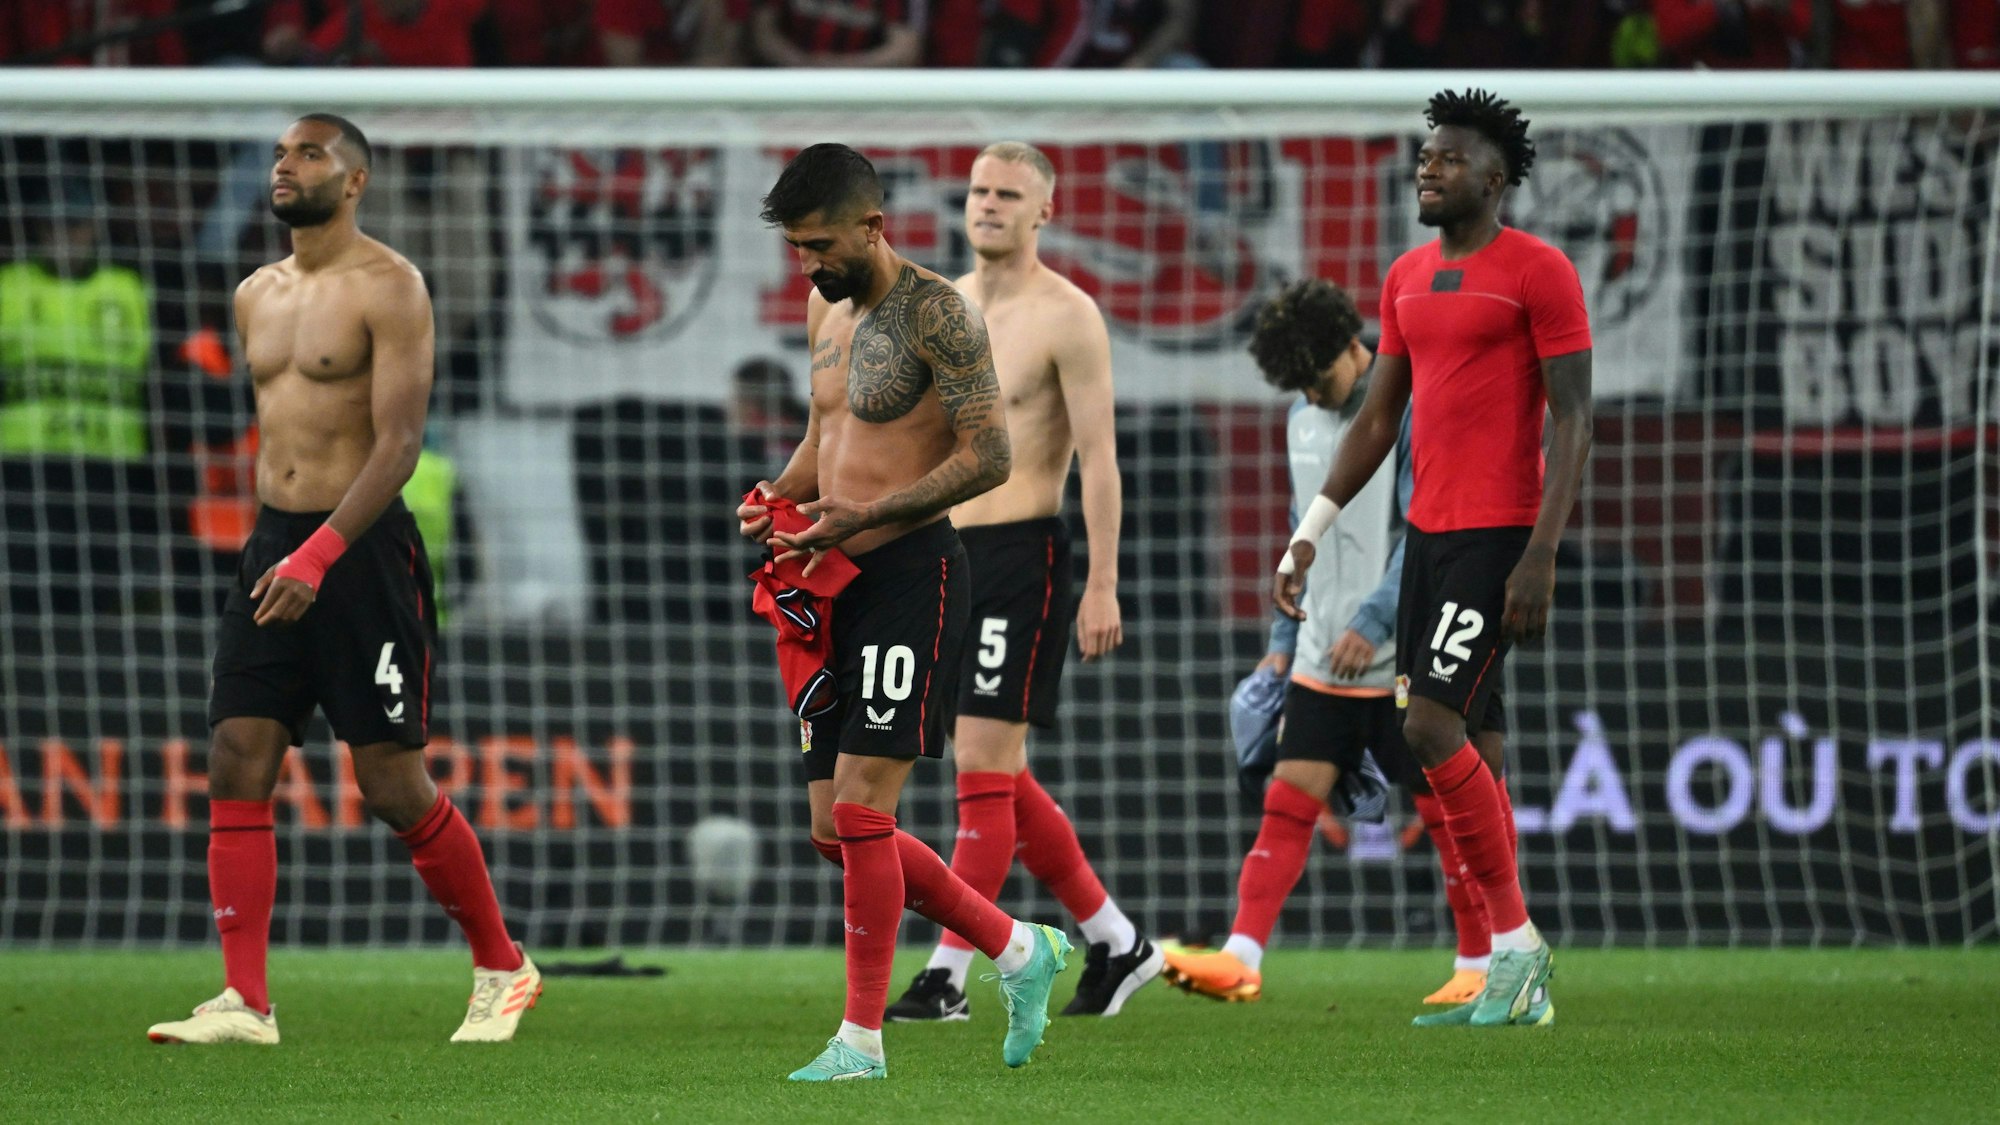 Leverkusens Jonathan Tah, Kerem Demirbay, Mitchel Bakker und Edmond Tapsoba verlassen nach der Partie das Spielfeld.